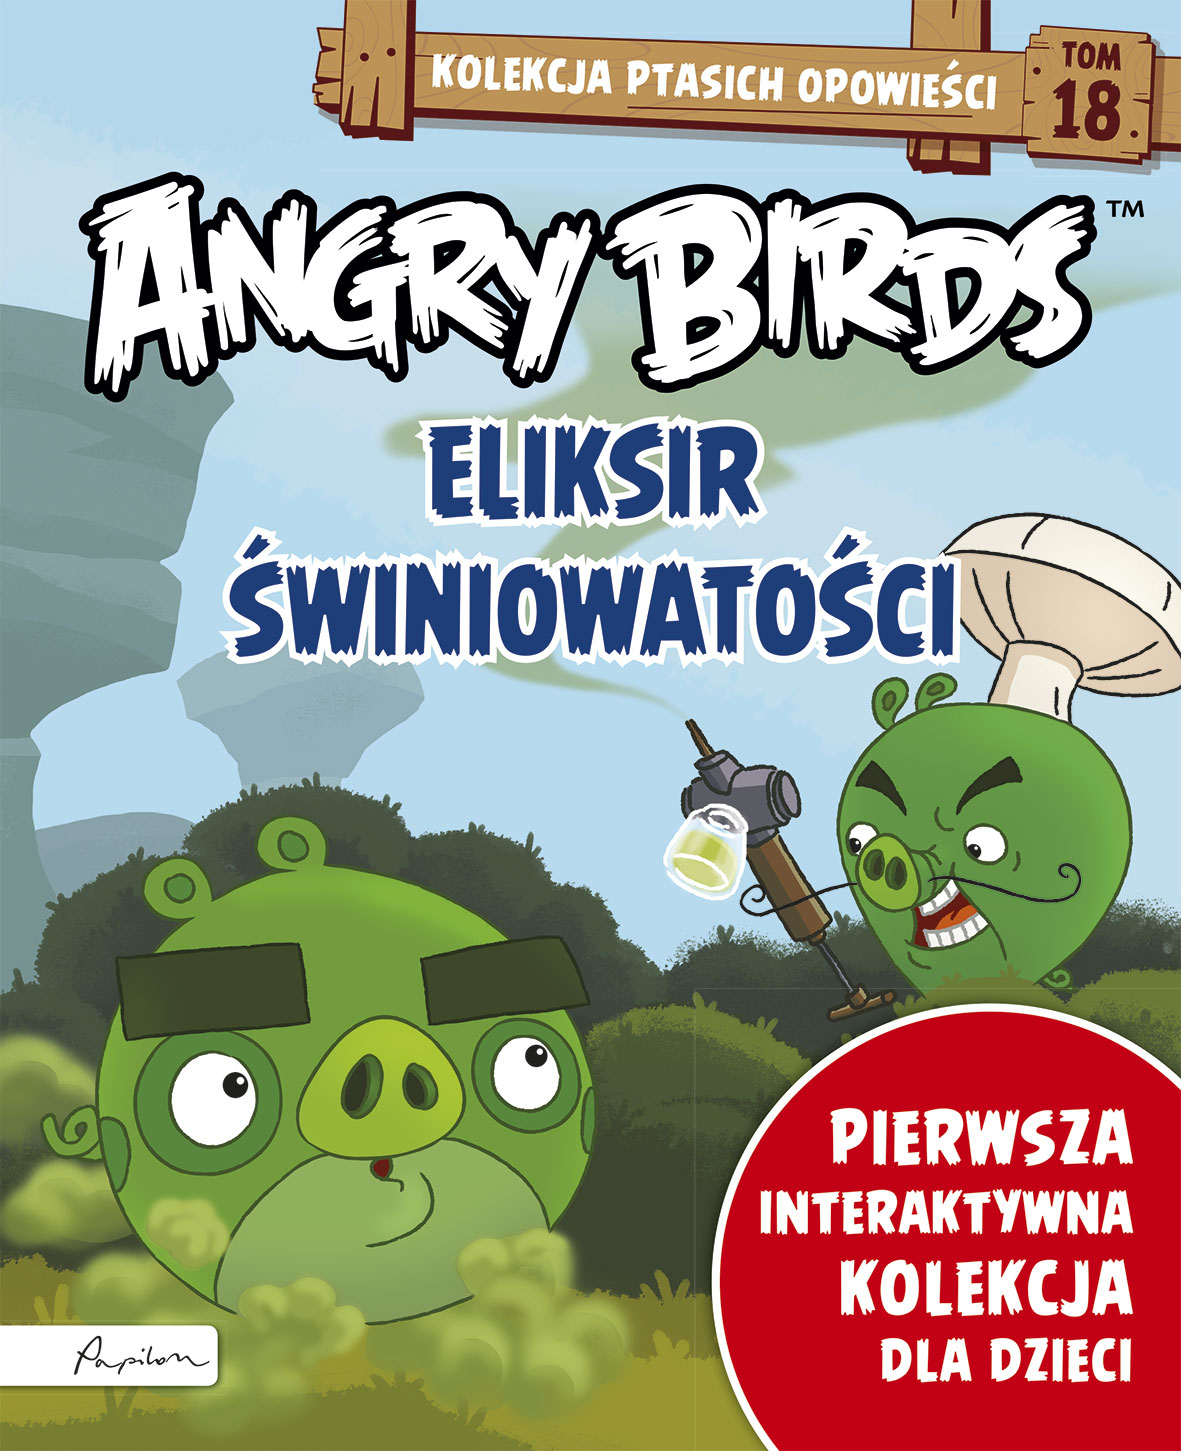 Angry Birds. Kolekcja ptasich opowieści 17. Obiad po sąsiedzku